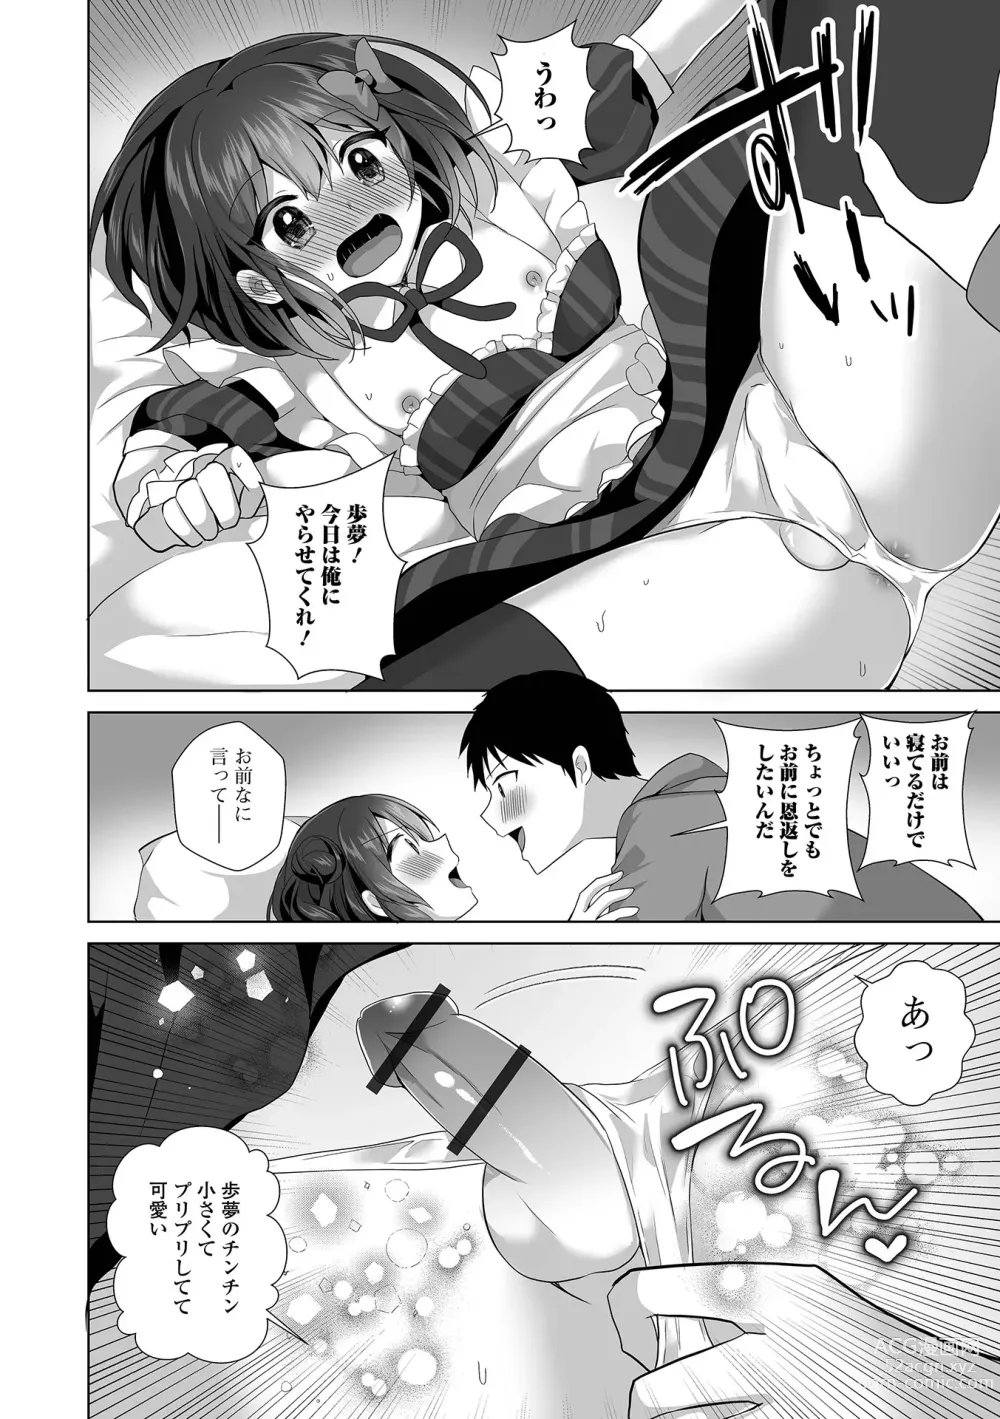 Page 10 of manga Gekkan Web Otoko no Ko-llection! S Vol. 93